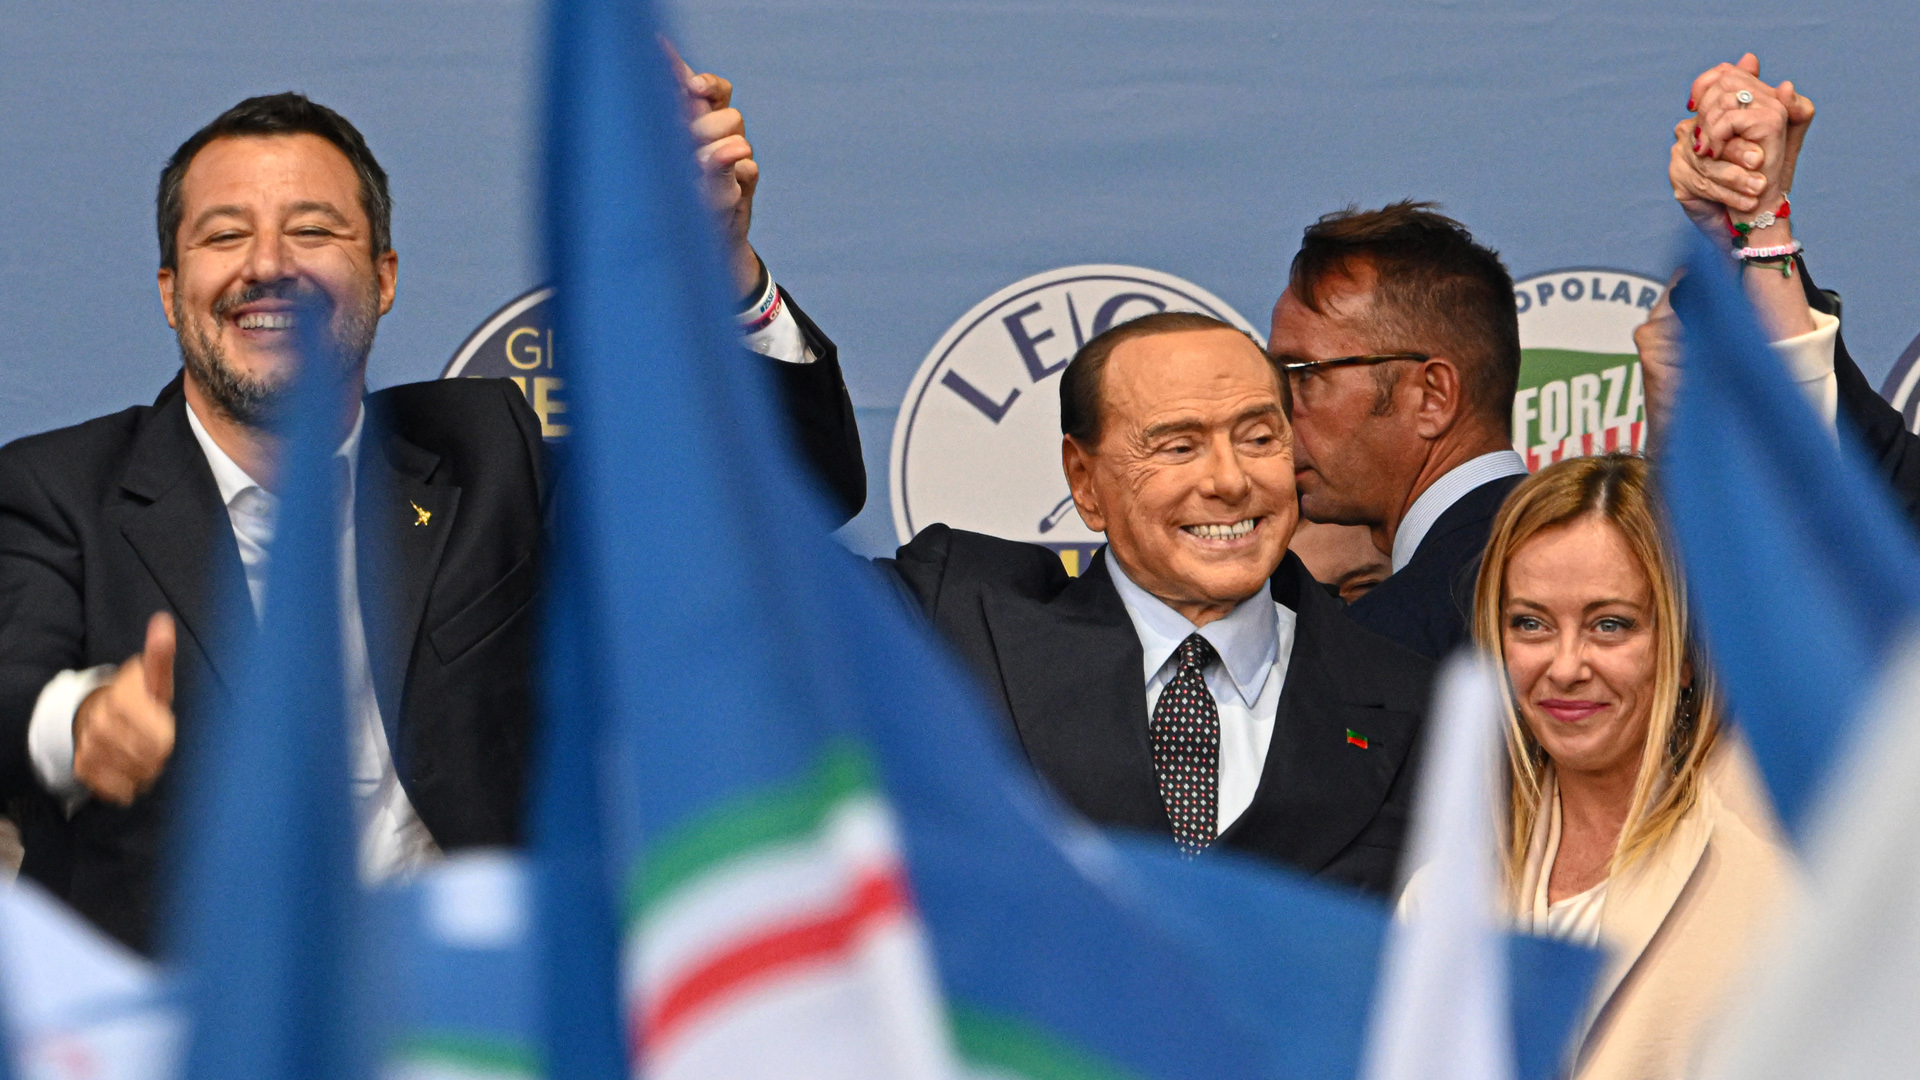 Convergencias y divergencias entre la coalición de derechas que llega al poder en Italia